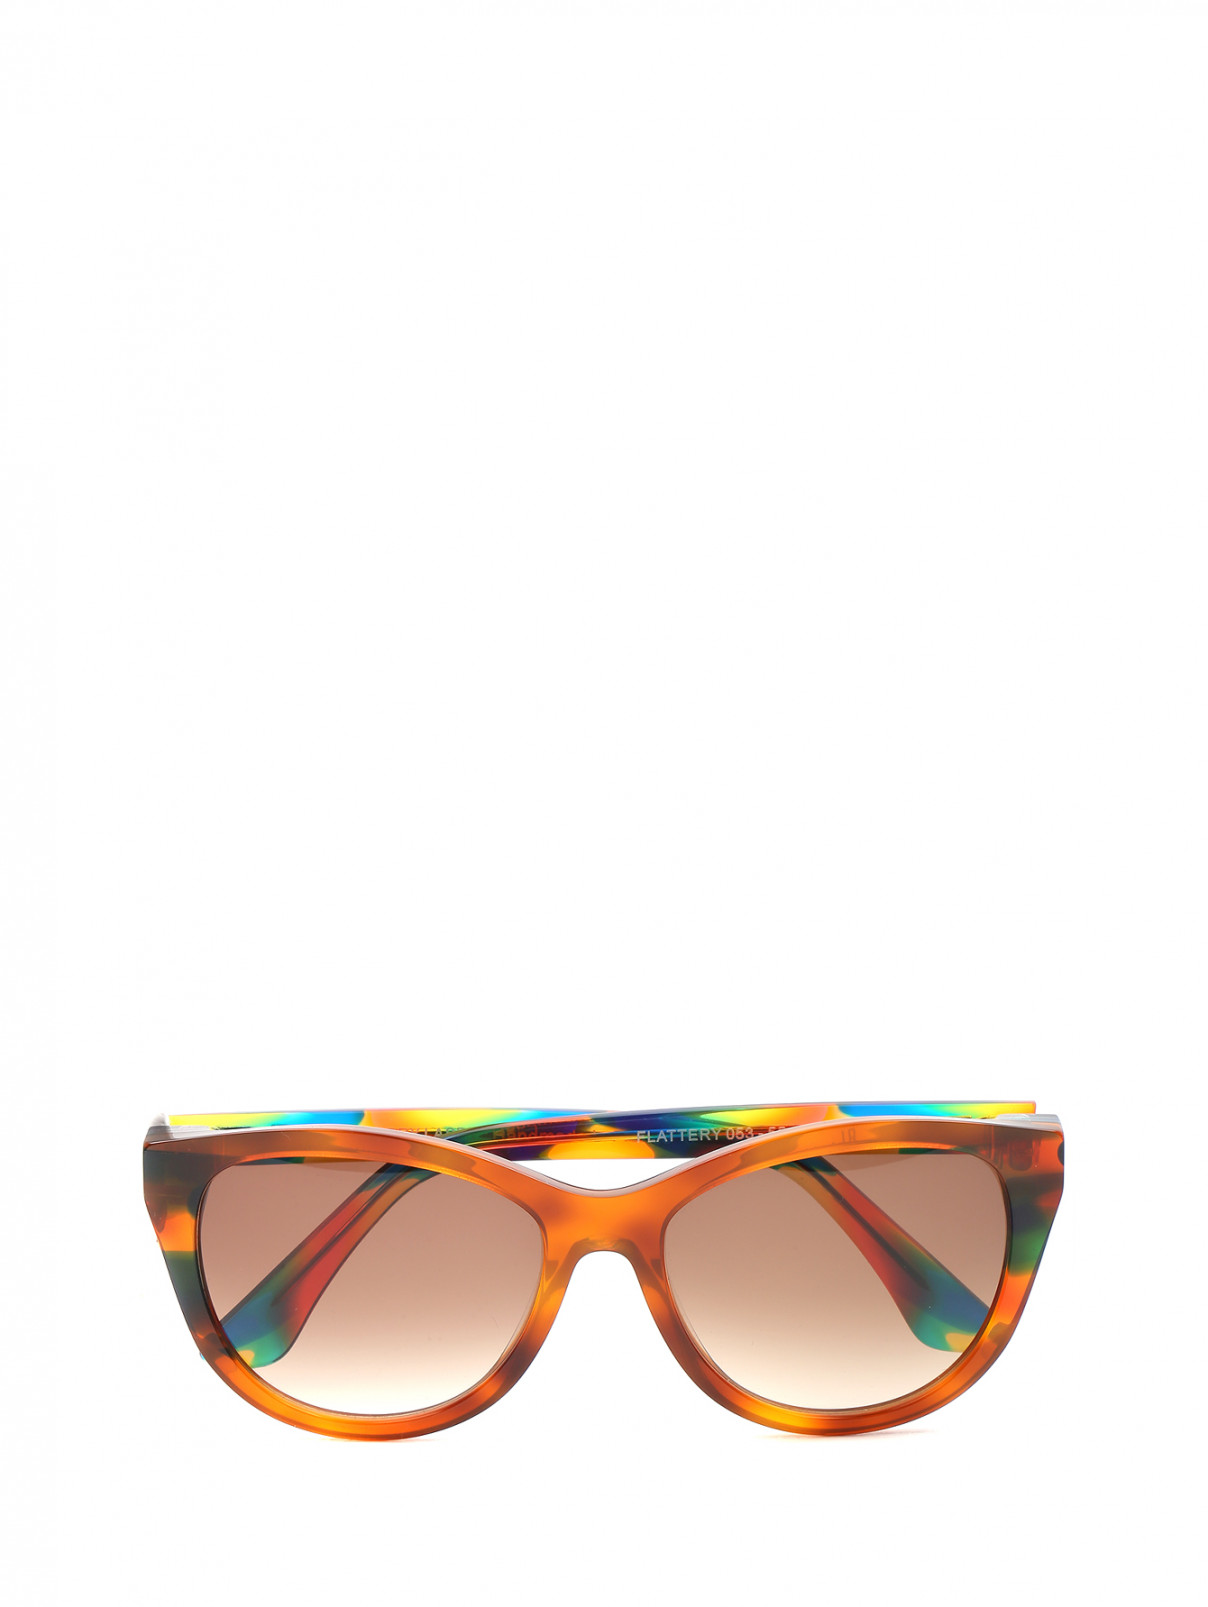 Cолнцезащитные очки с узором Thierry Lasry  –  Общий вид  – Цвет:  Узор